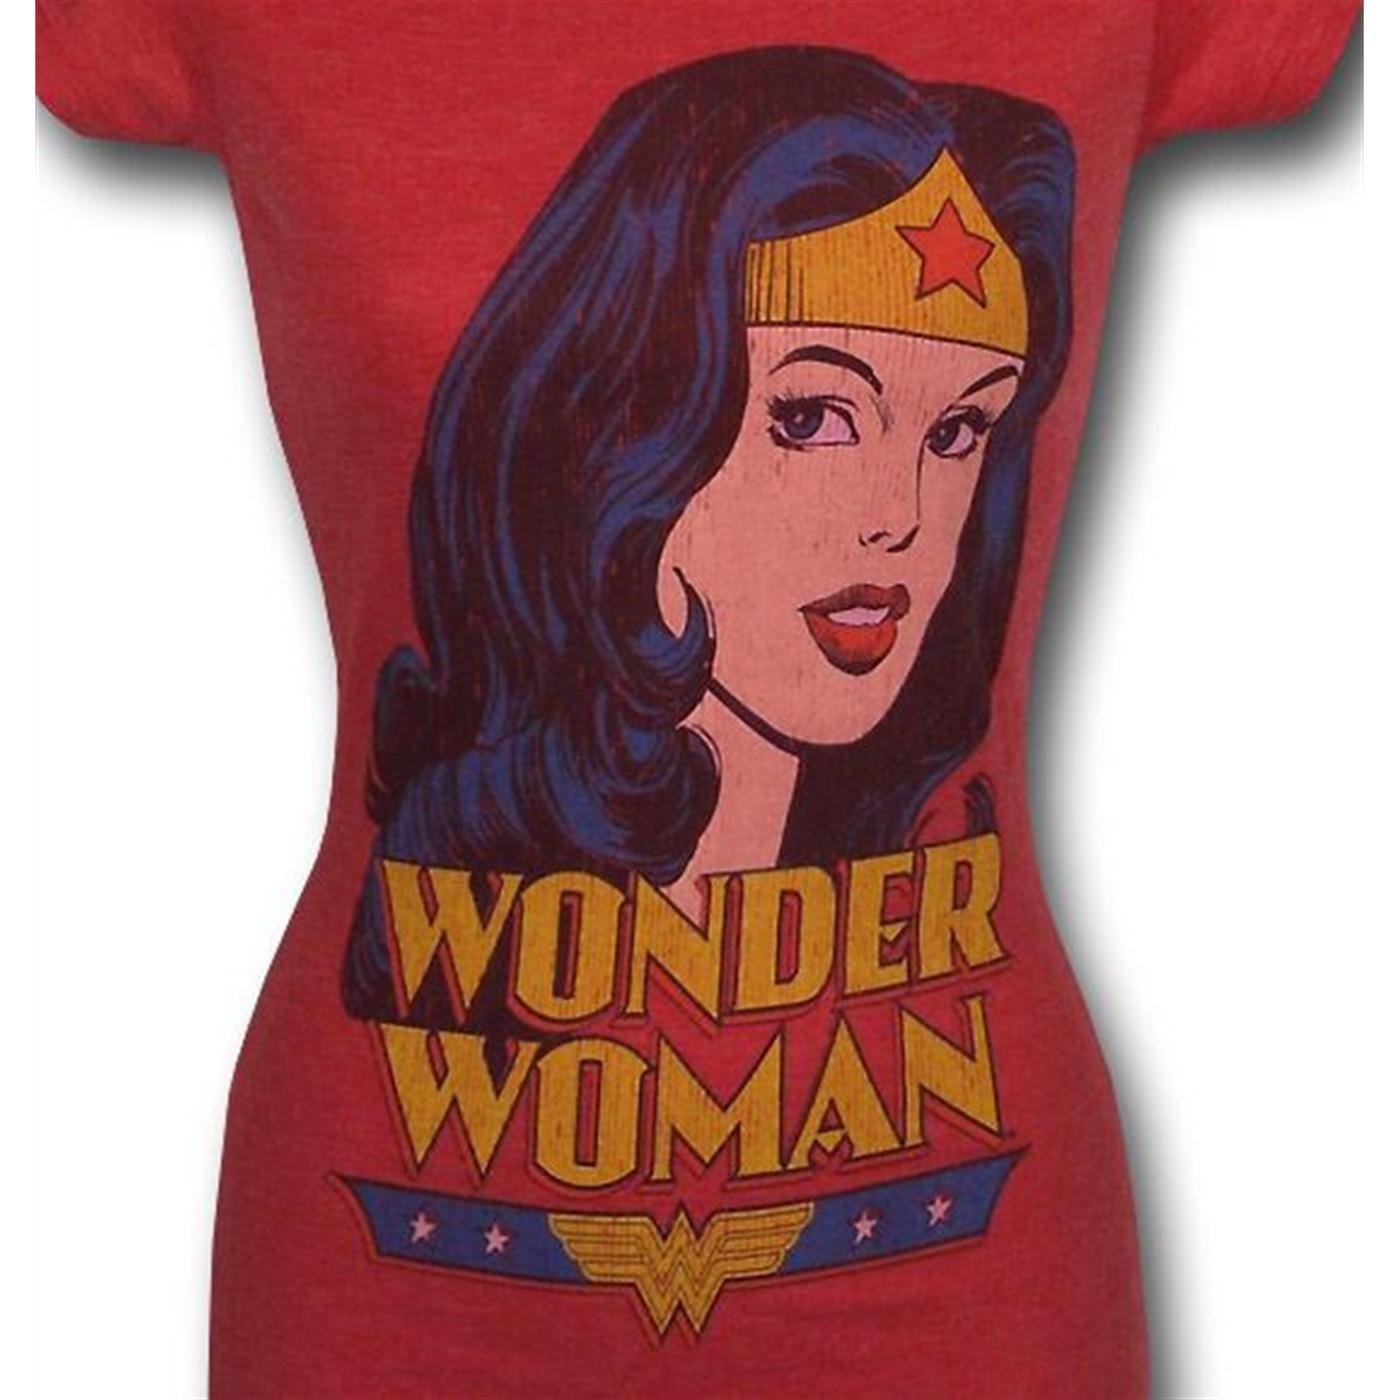 Wonder Woman Jr Women Princess T-Shirt